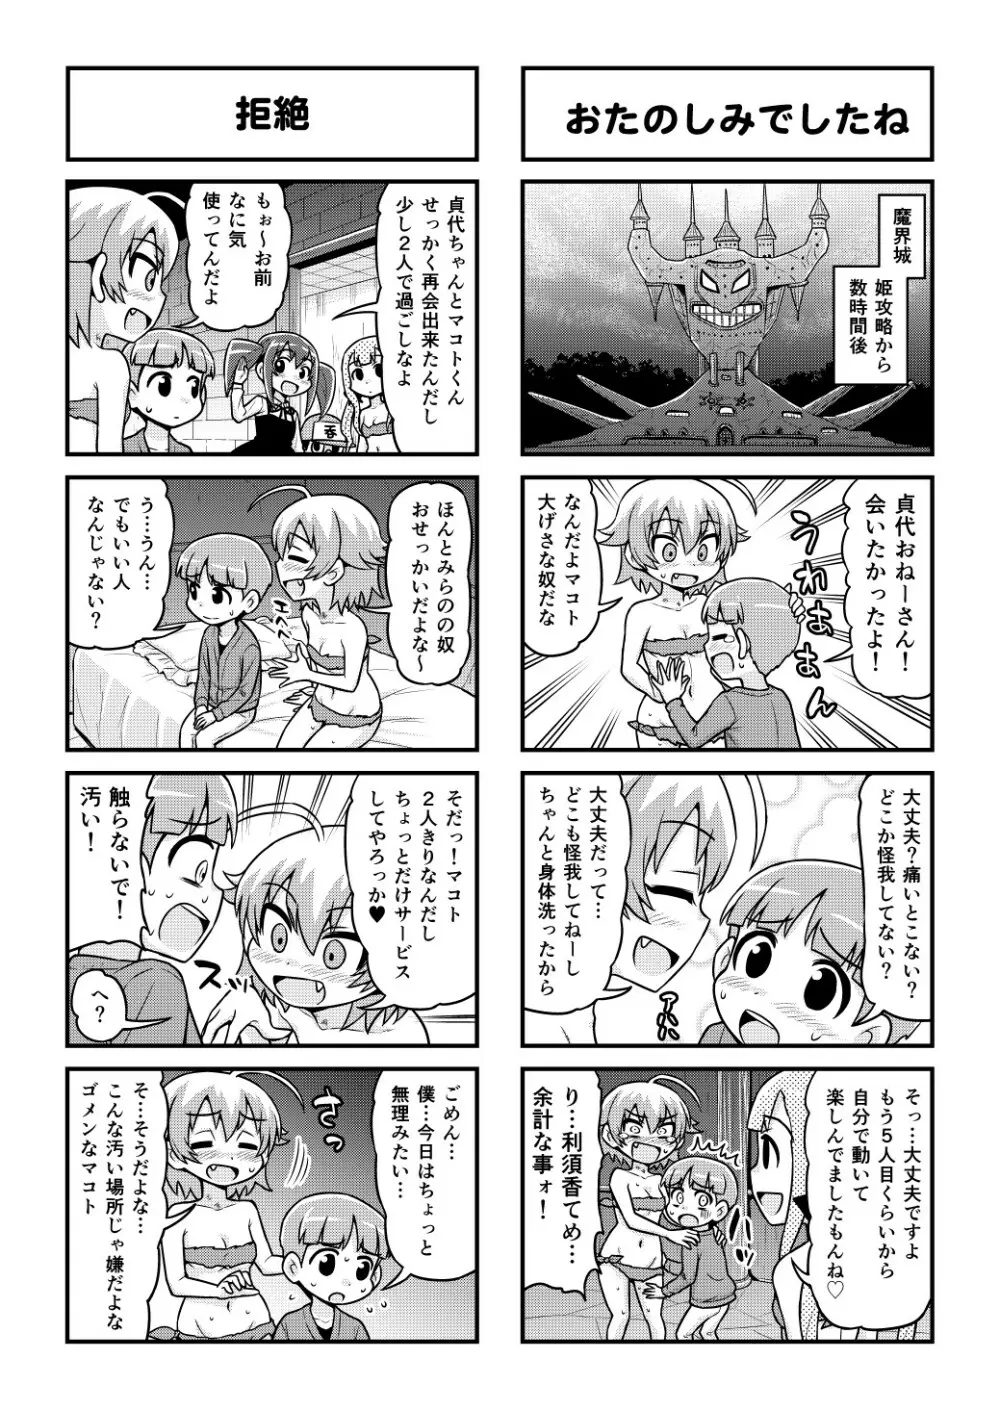 のんきBOY 1-48 - page425